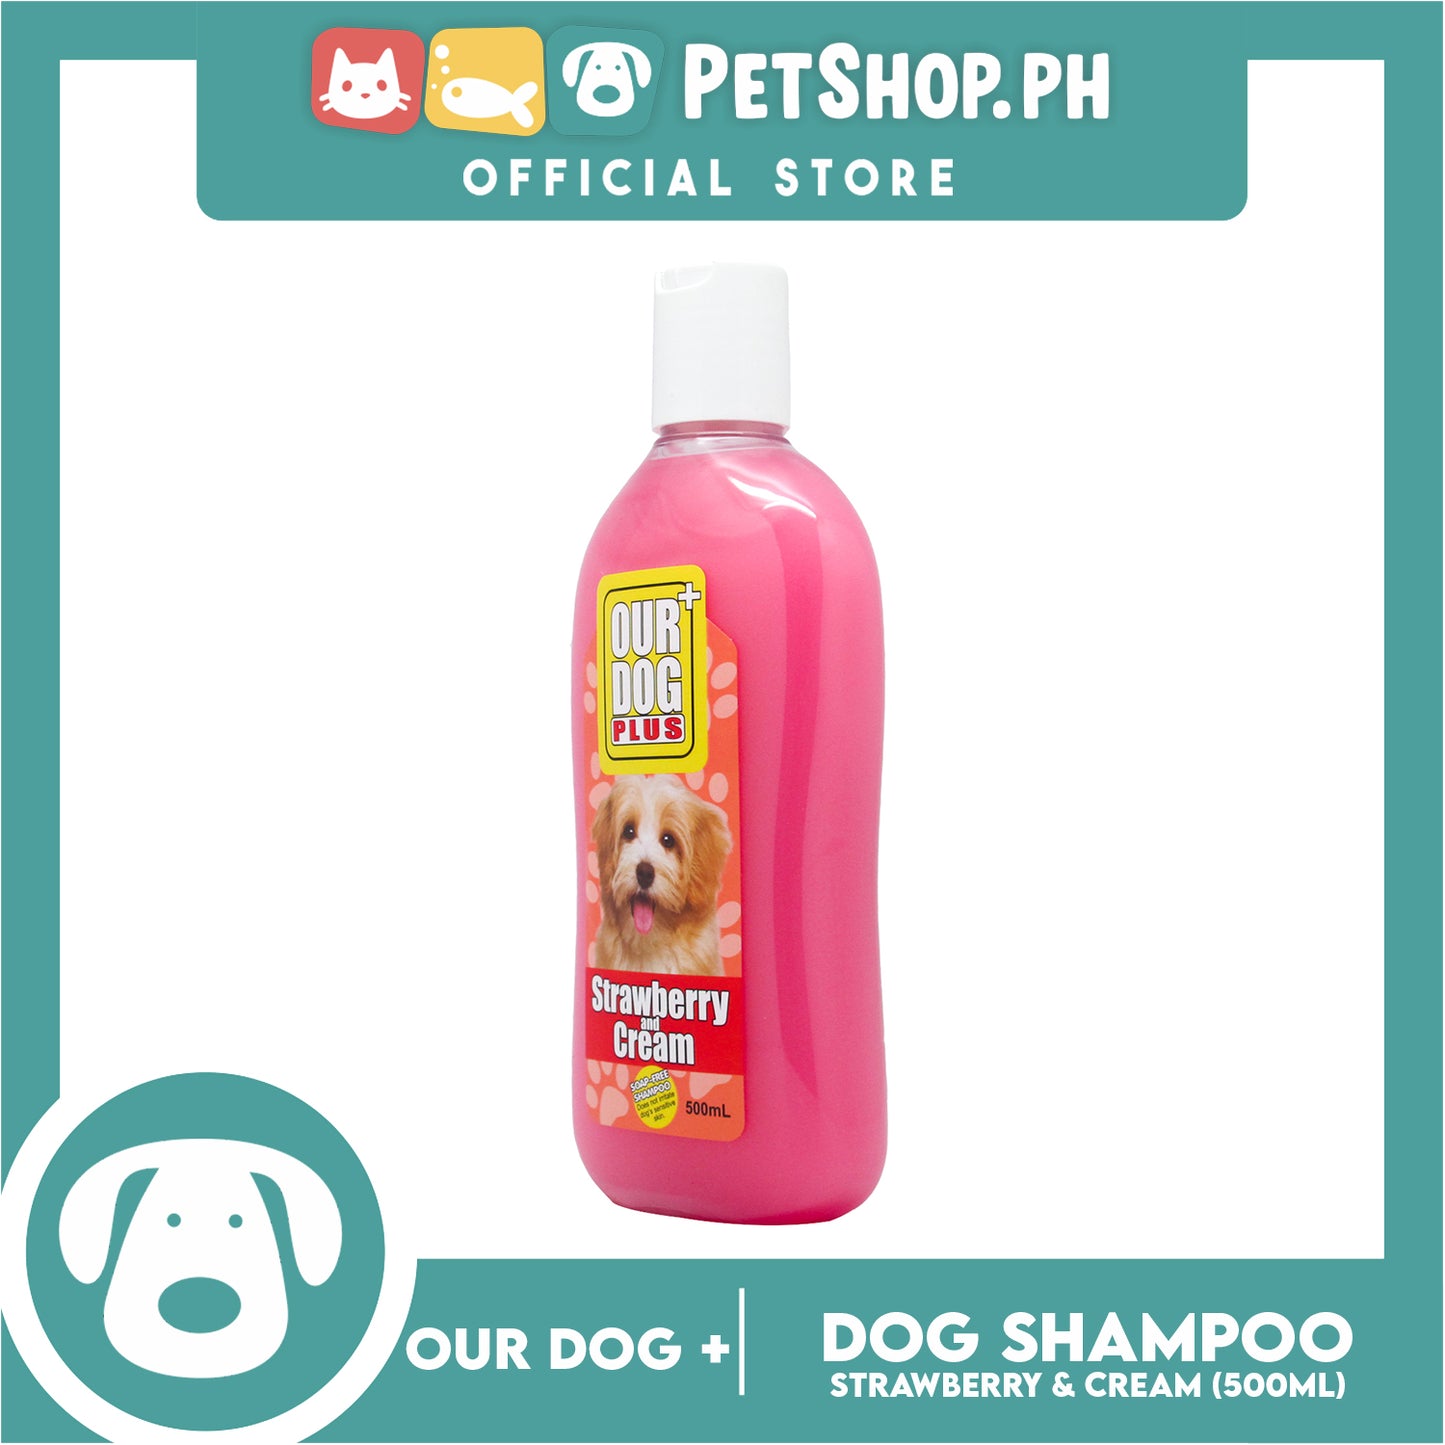 Our Dog Plus Strawberry and Cream Shampoo